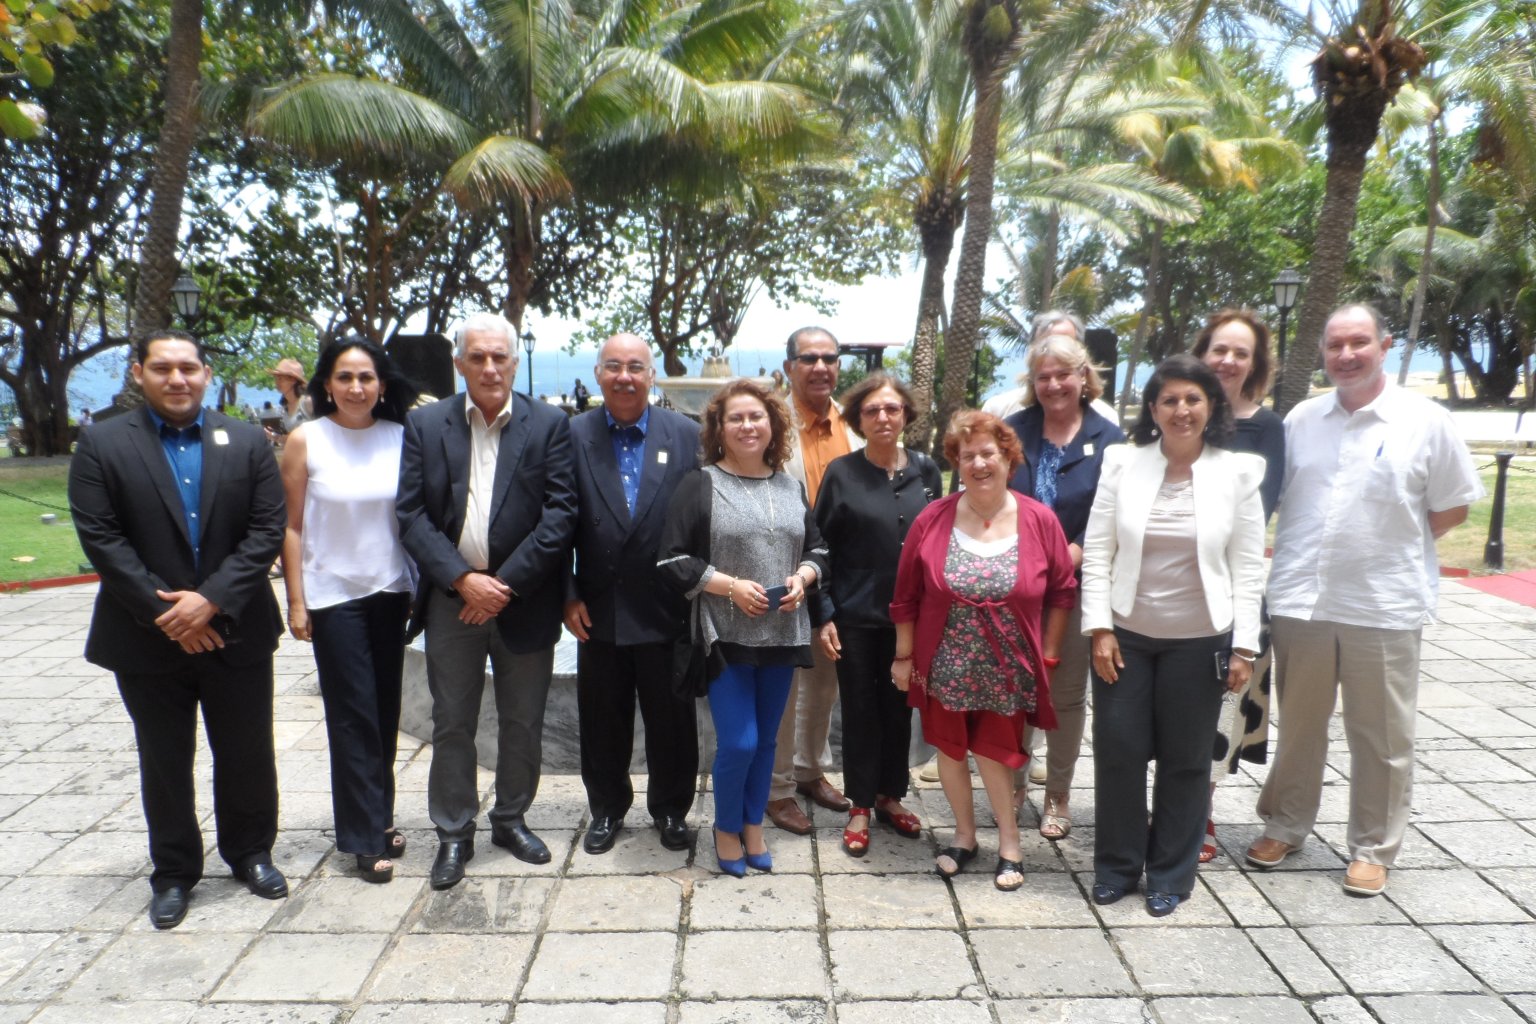 A 21-a reuniune a Comitetului regional ROLAC, care a avut loc la Havana, Cuba